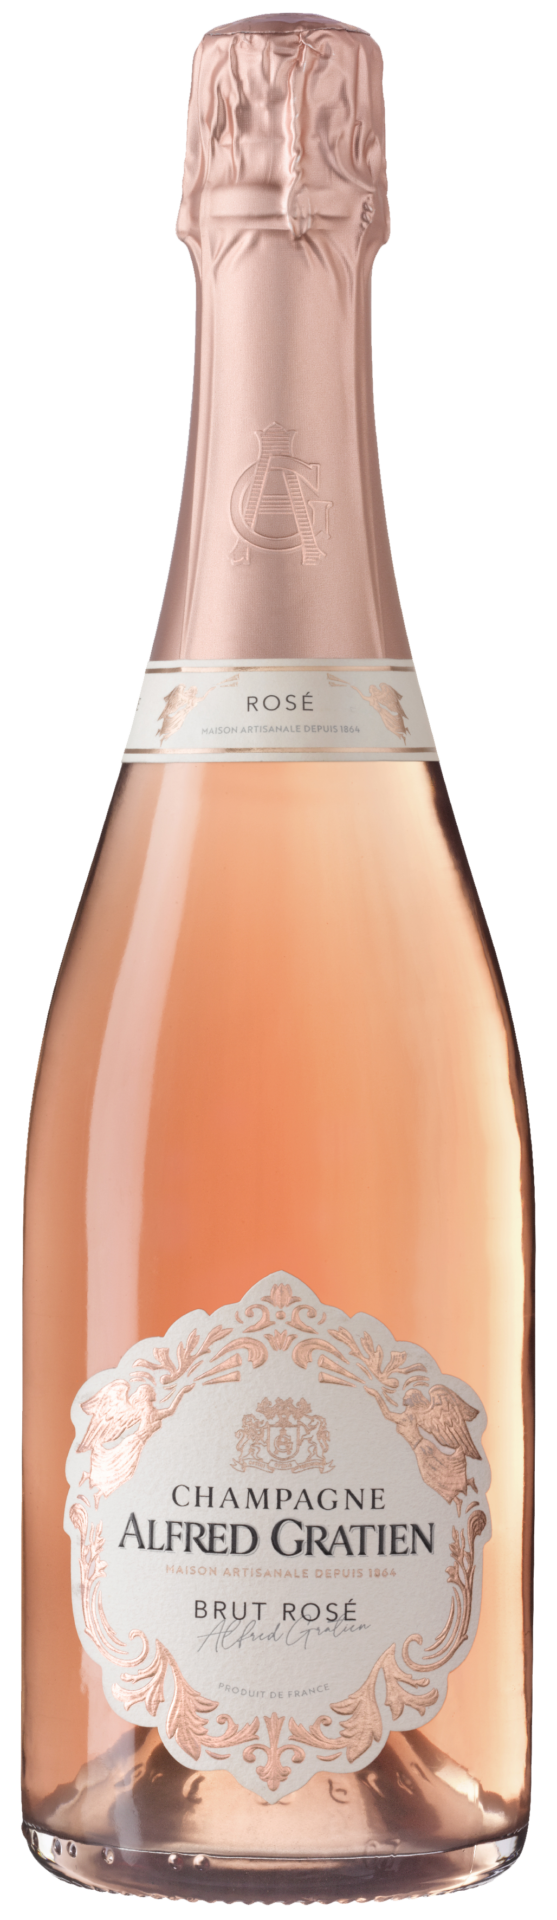 La bouteille de champagne brut rosée d'Alfred Gratien.